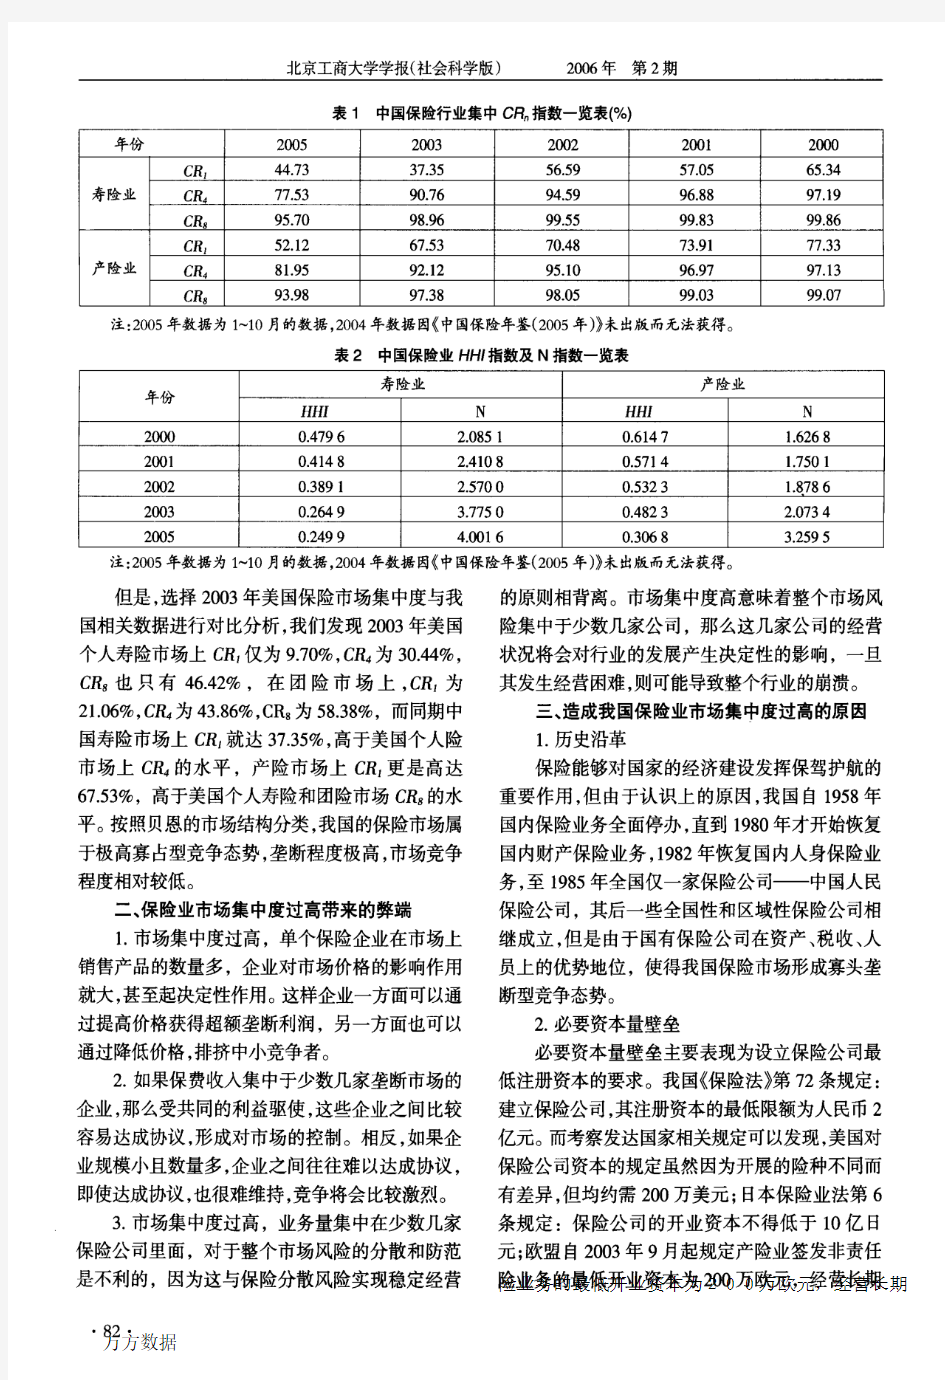 中国保险业市场集中度的实证分析